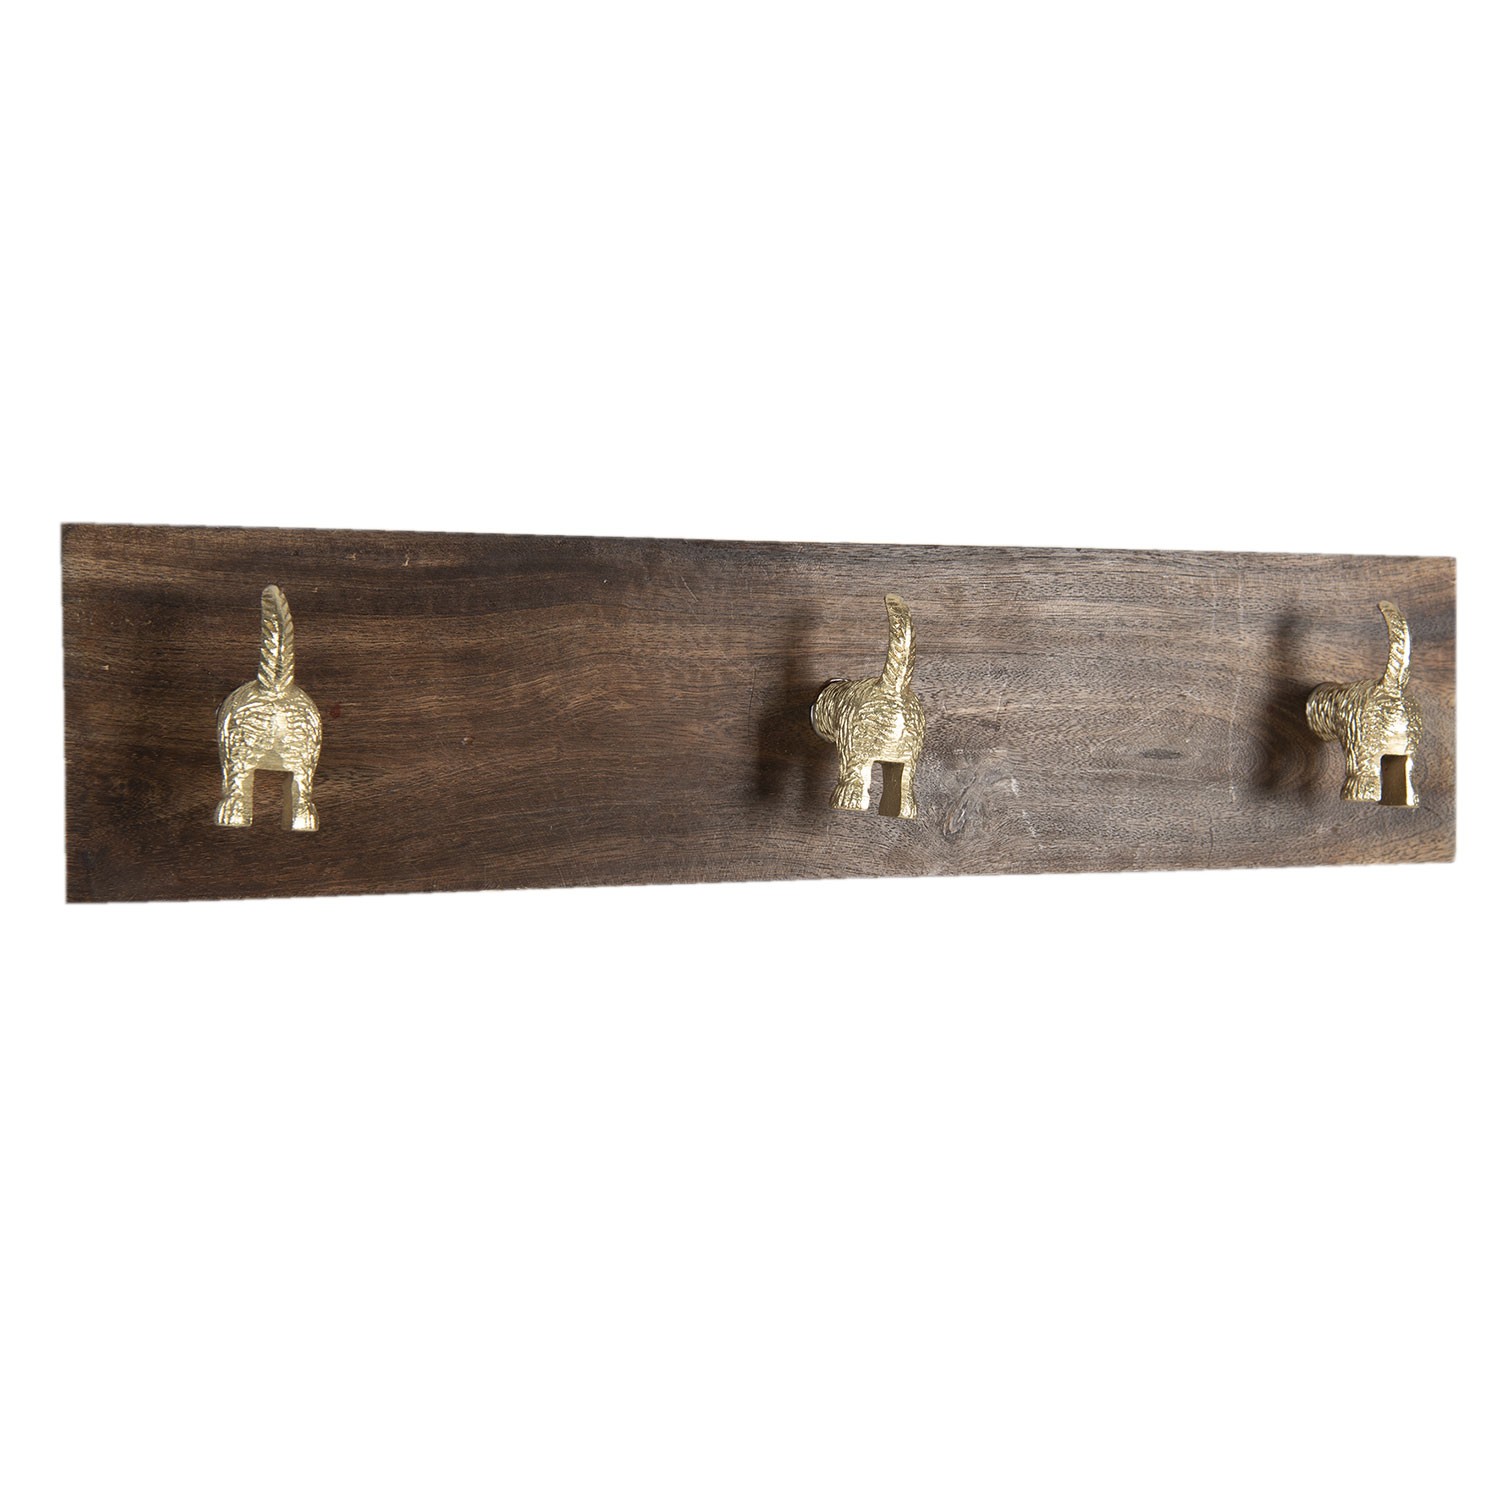 Dřevěný nástěnný věšák s knopkami psích ocásků - 44*8*10 cm 6H1960